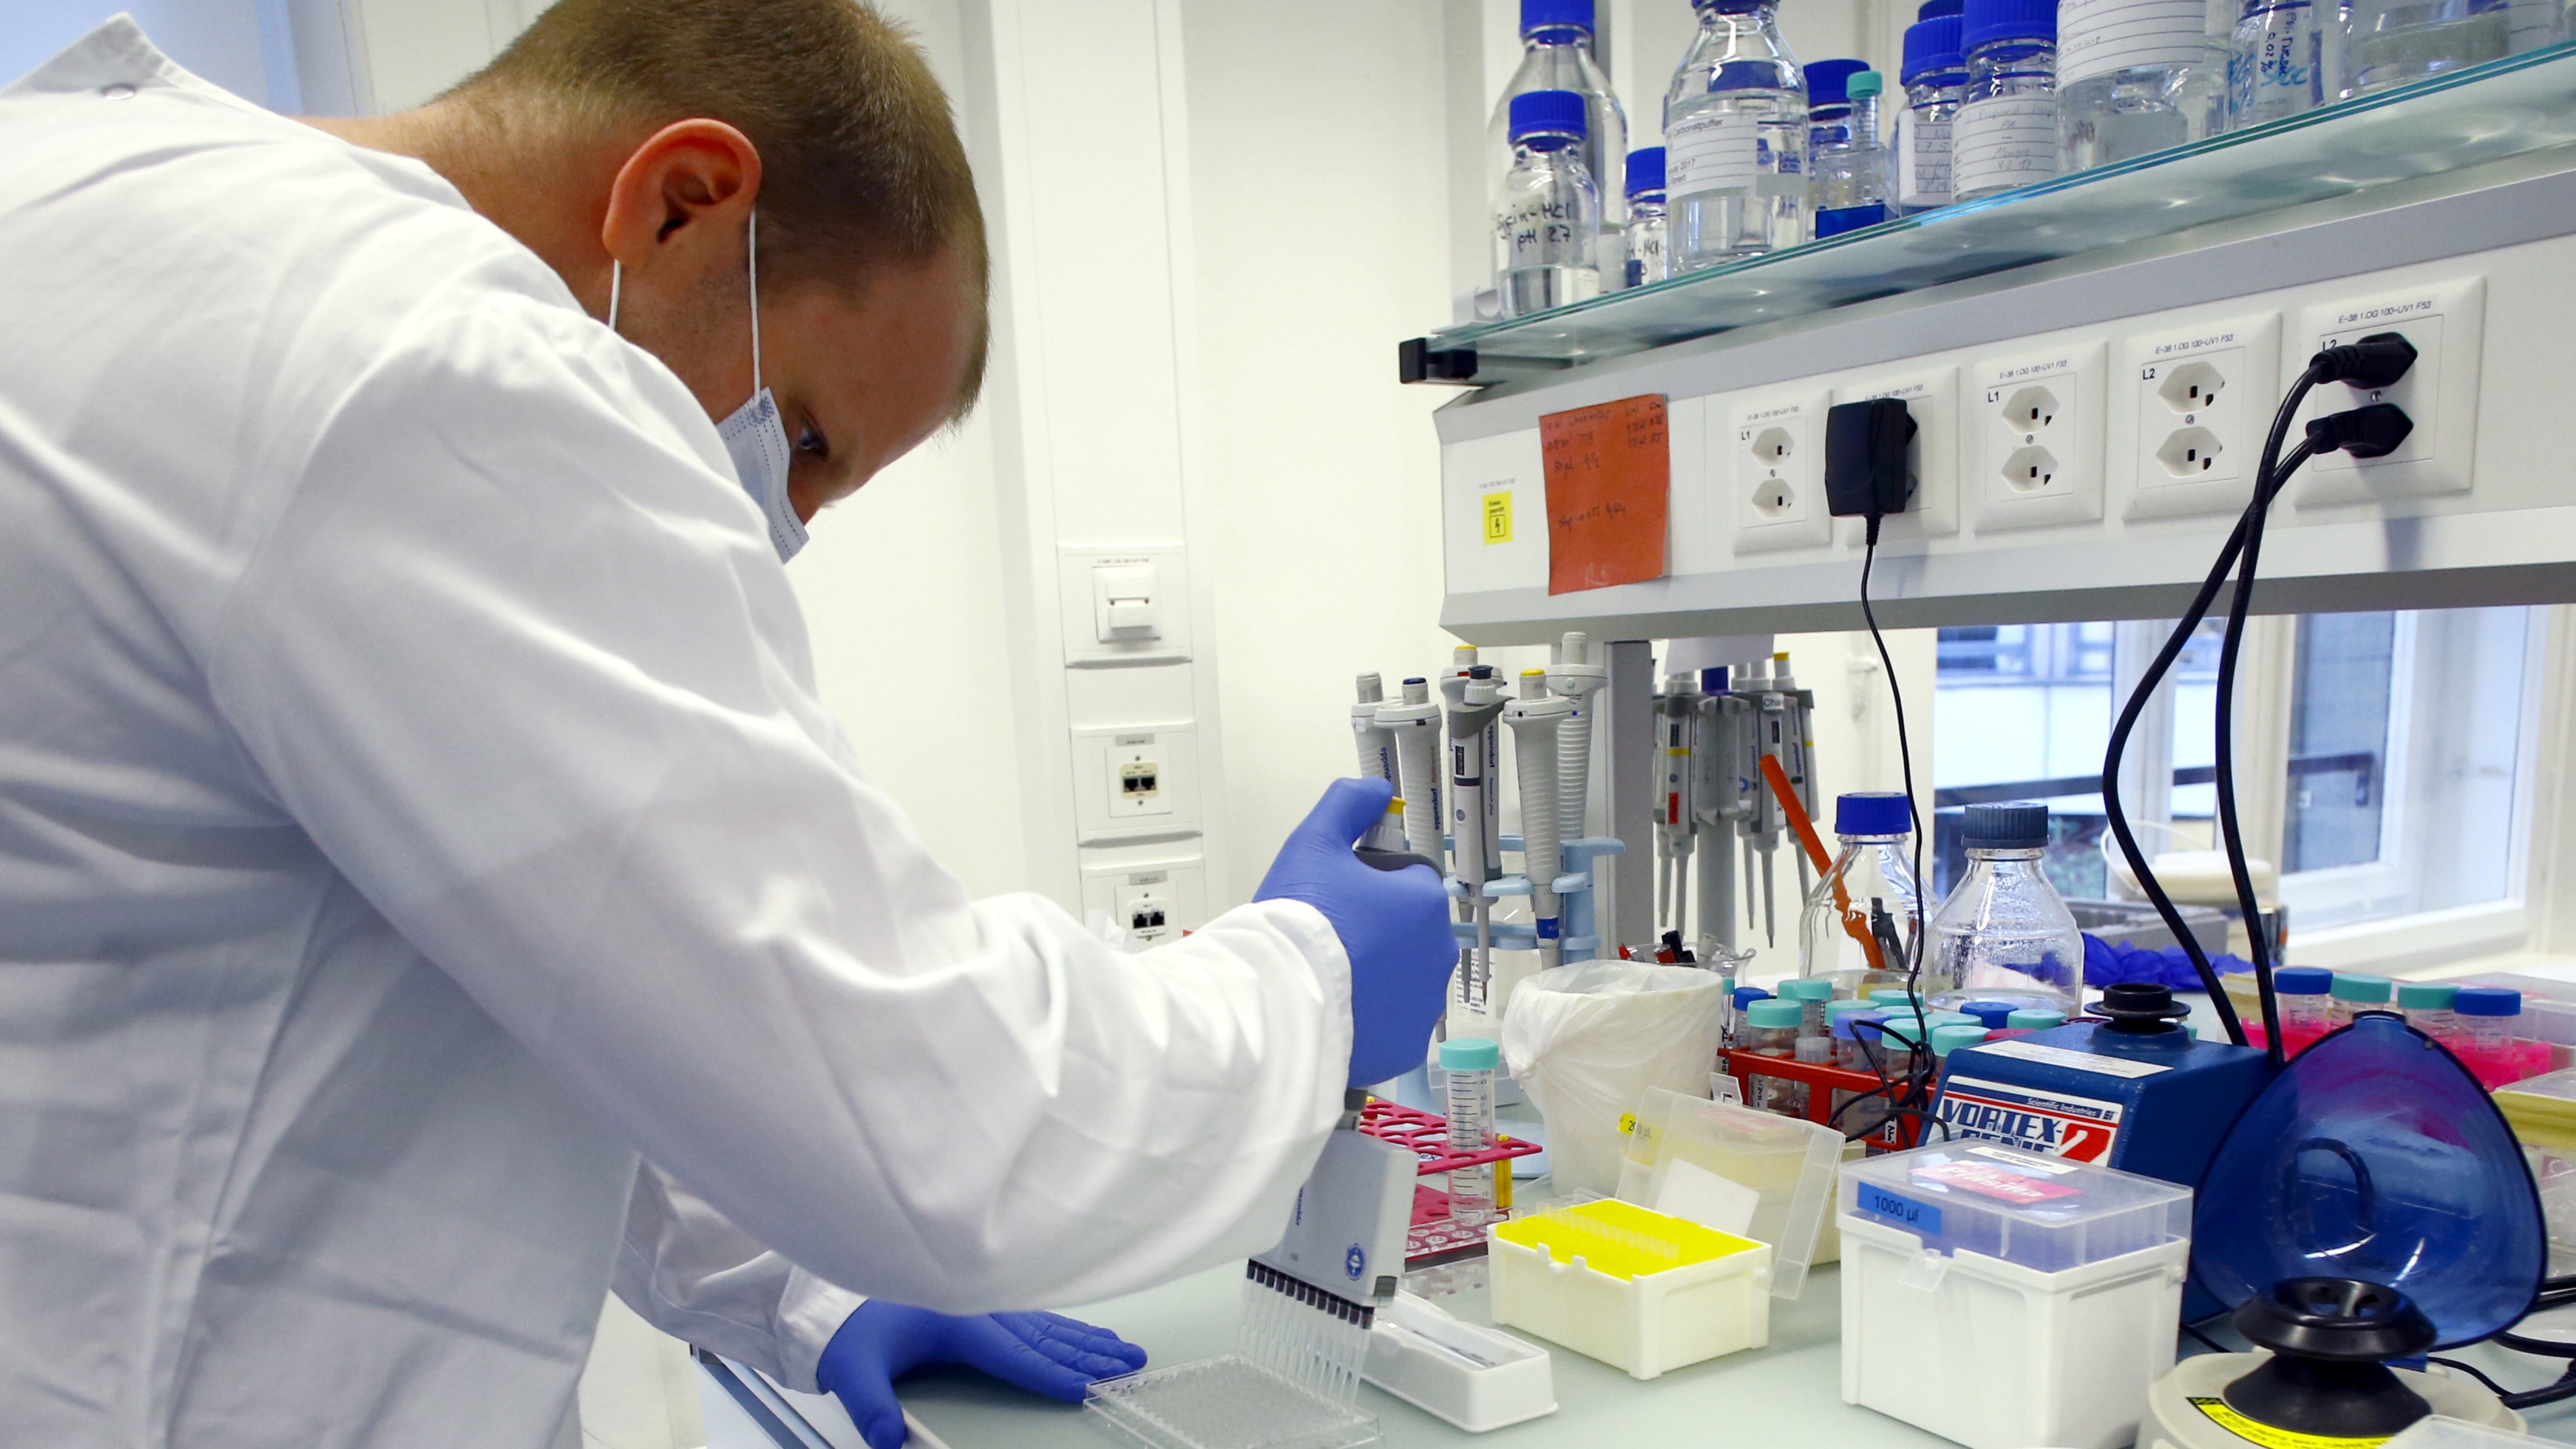 Un técnico de laboratorio es visto en el hospital universitario Inselspital Universitaetsspital Bern durante investigaciones para una vacuna contra la enfermedad COVID-19 en Berna, Suiza (Reuters)